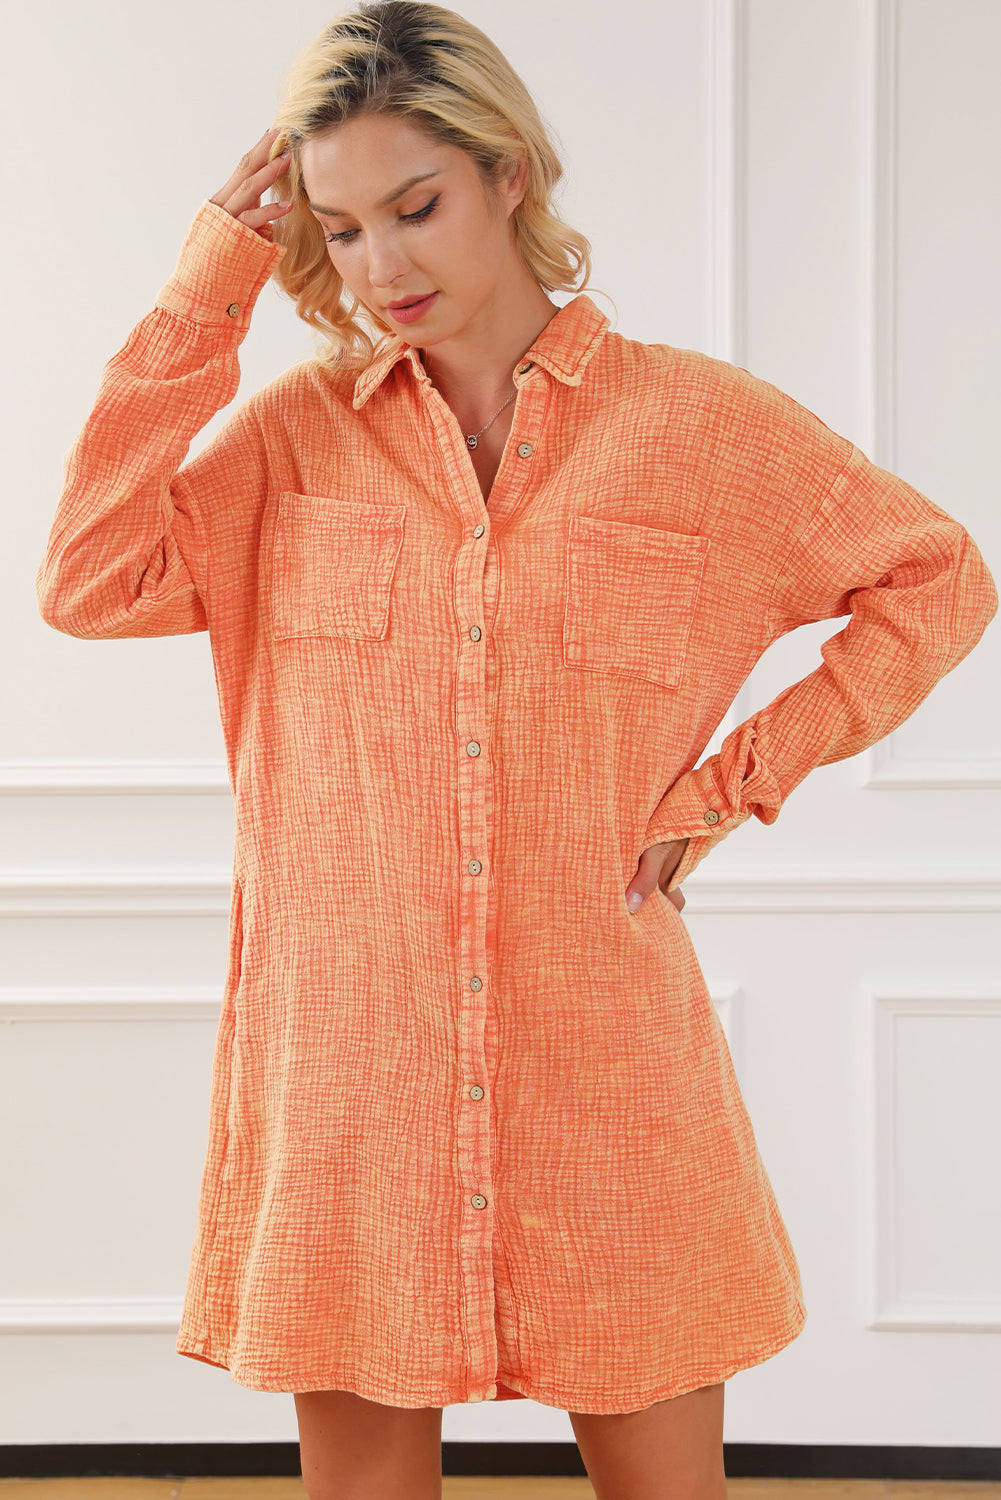 Abito camicia oversize arancione con doppia tasca sul petto increspata